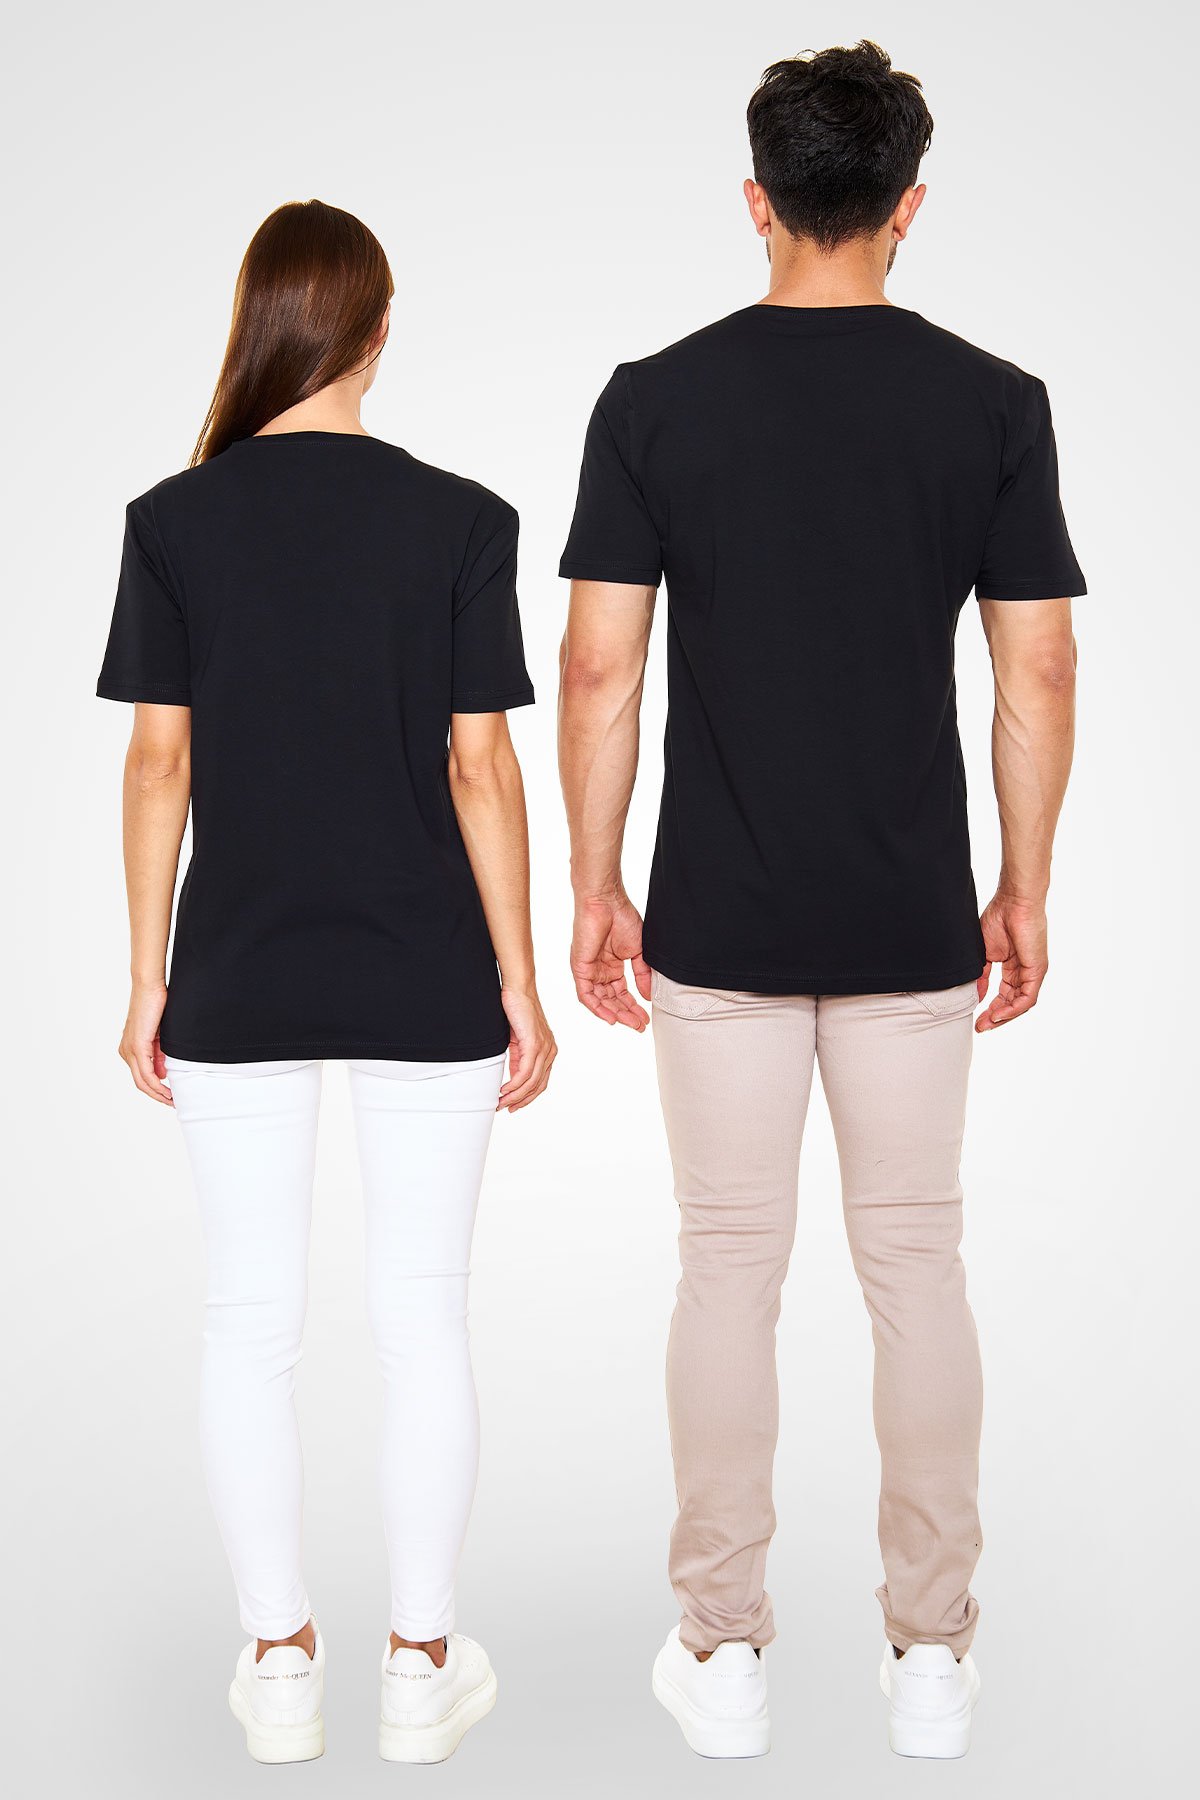 Steve Vai Baskılı Unisex Siyah V Yaka Tişört - Tshirt